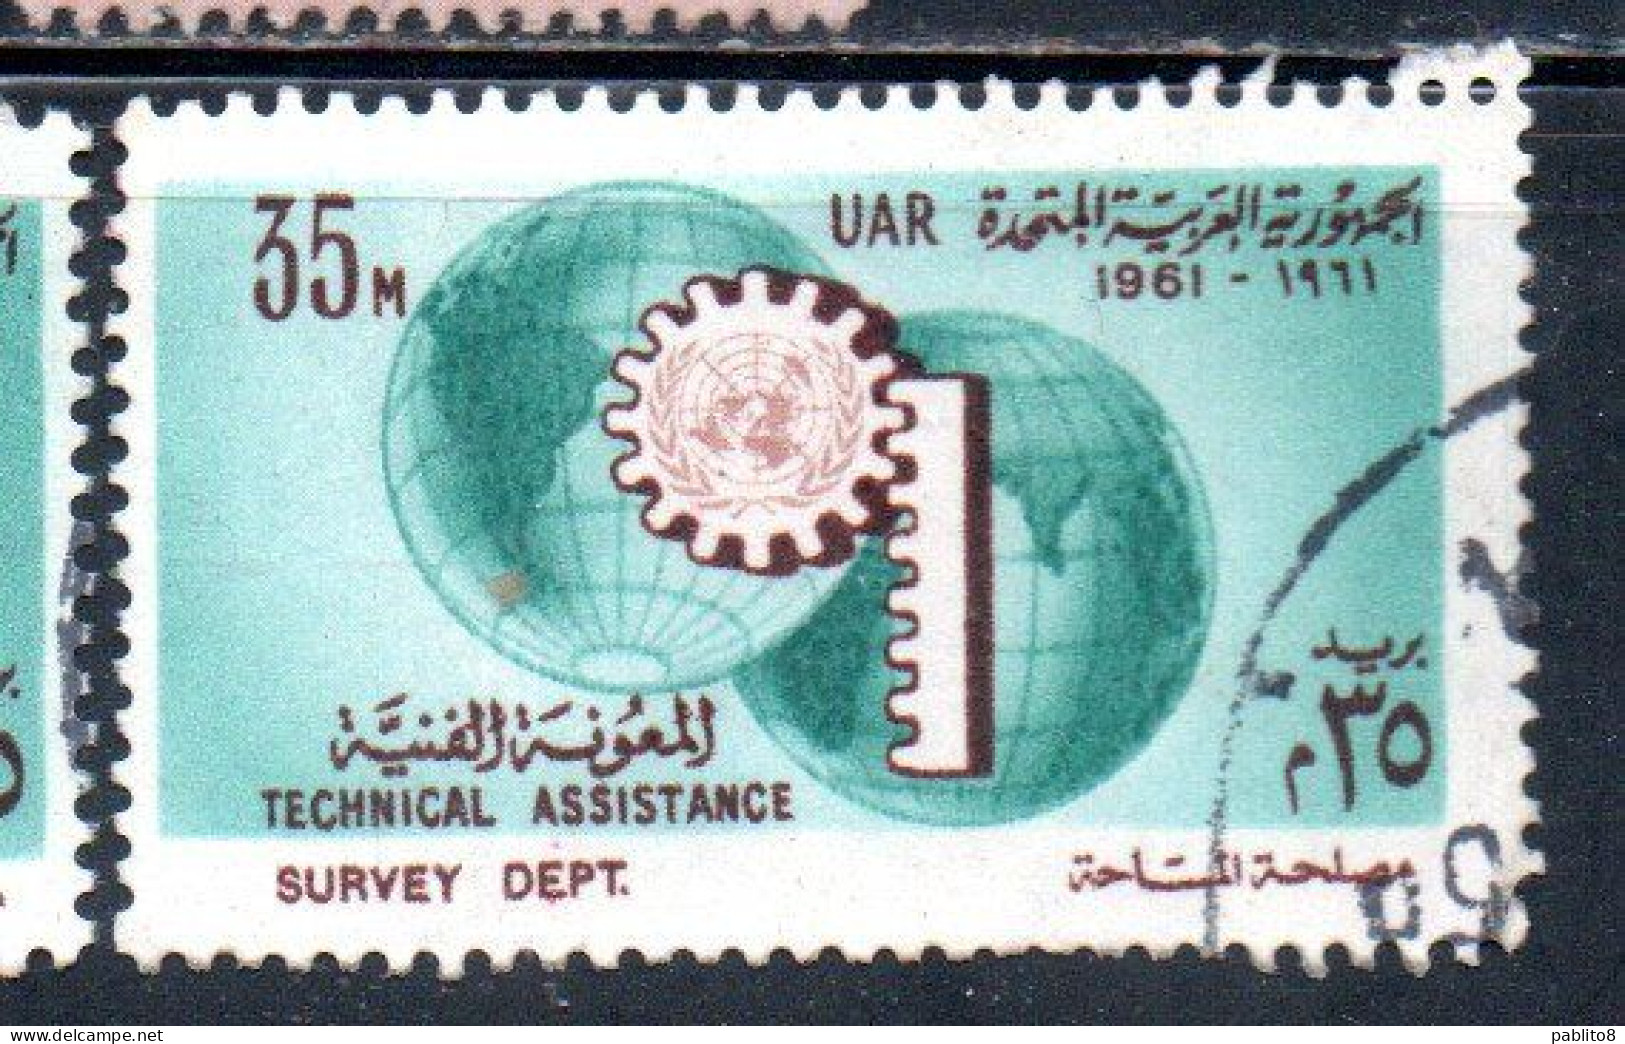 UAR EGYPT EGITTO 1961 UN ONU TECHNICAL ASSISTENCE PROGRAM AND 16th ANNIVERSARY 35m USED USATO OBLITERE' - Usati